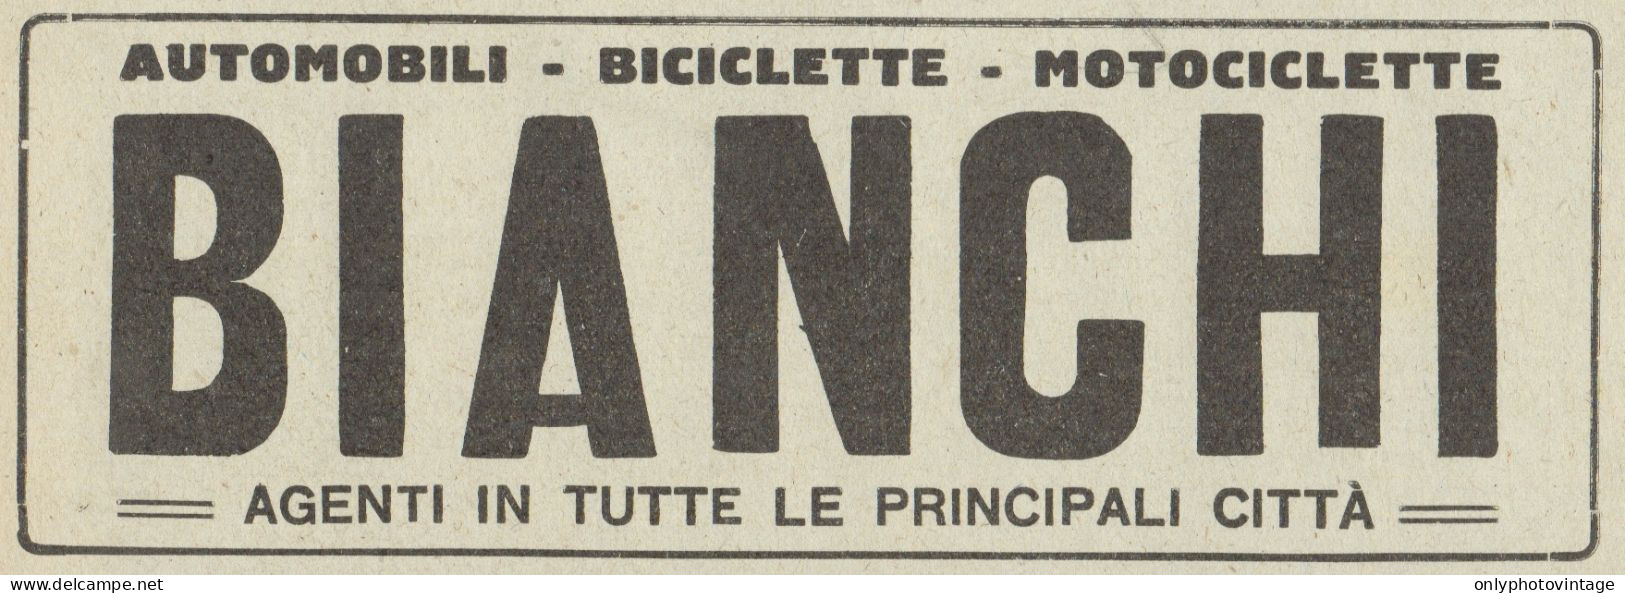 Bici, Moto & Auto BIANCHI - Pubblicità D'epoca - 1922 Old Advertising - Publicités